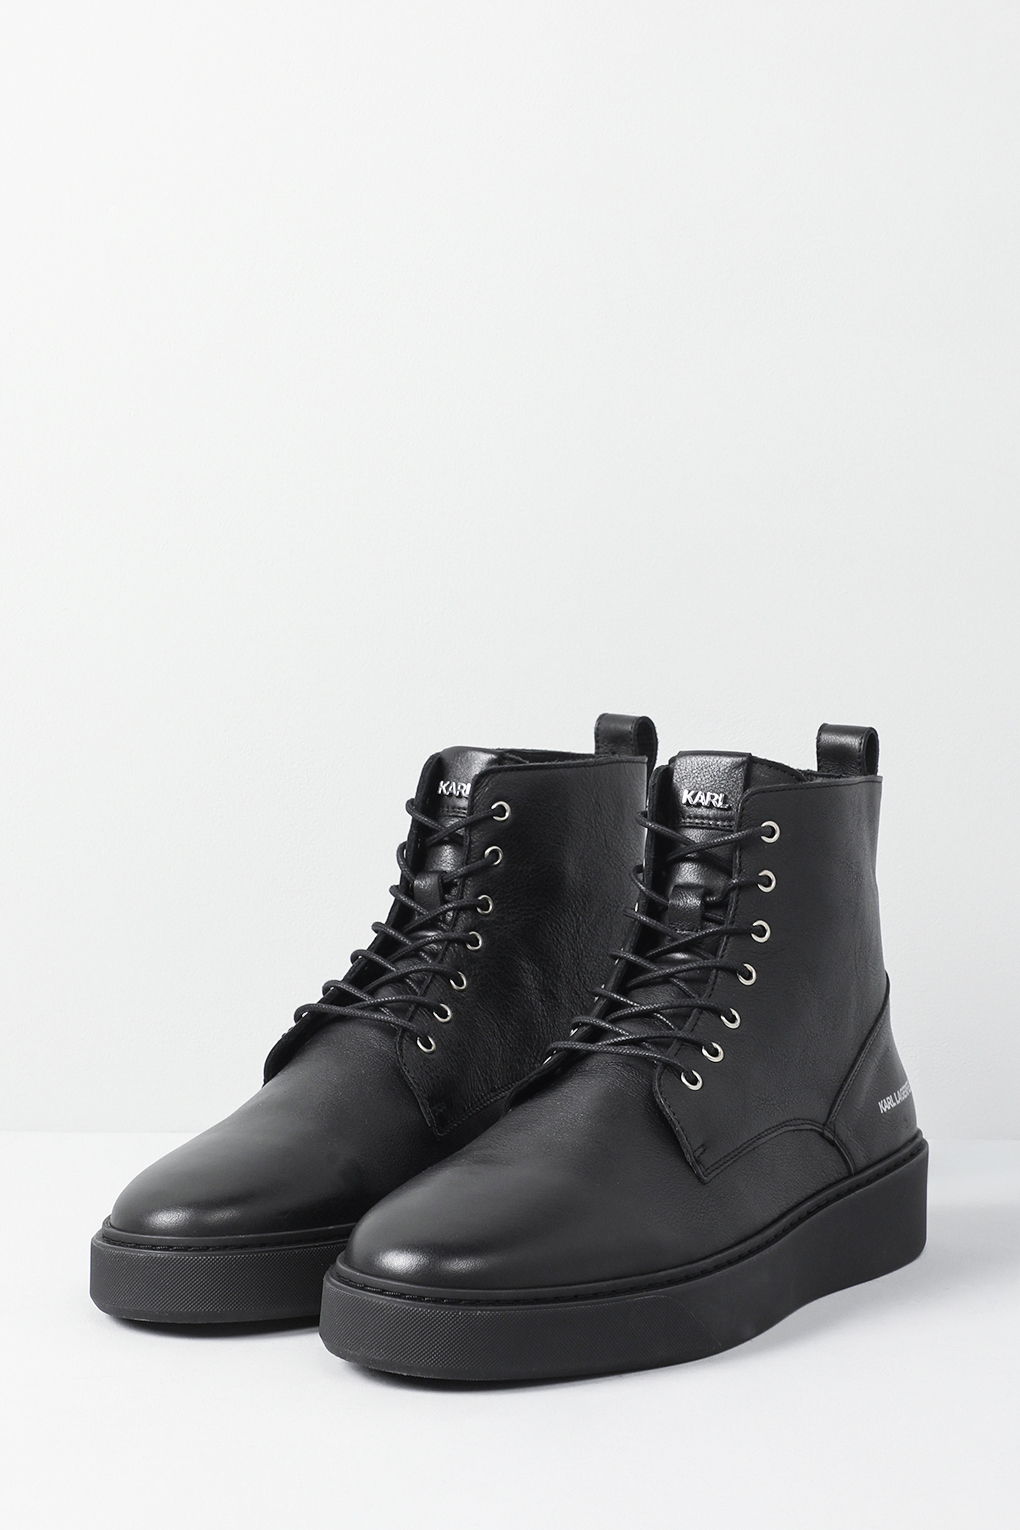 Ботинки мужские Karl Lagerfeld 855003-533470 черные 45 EU